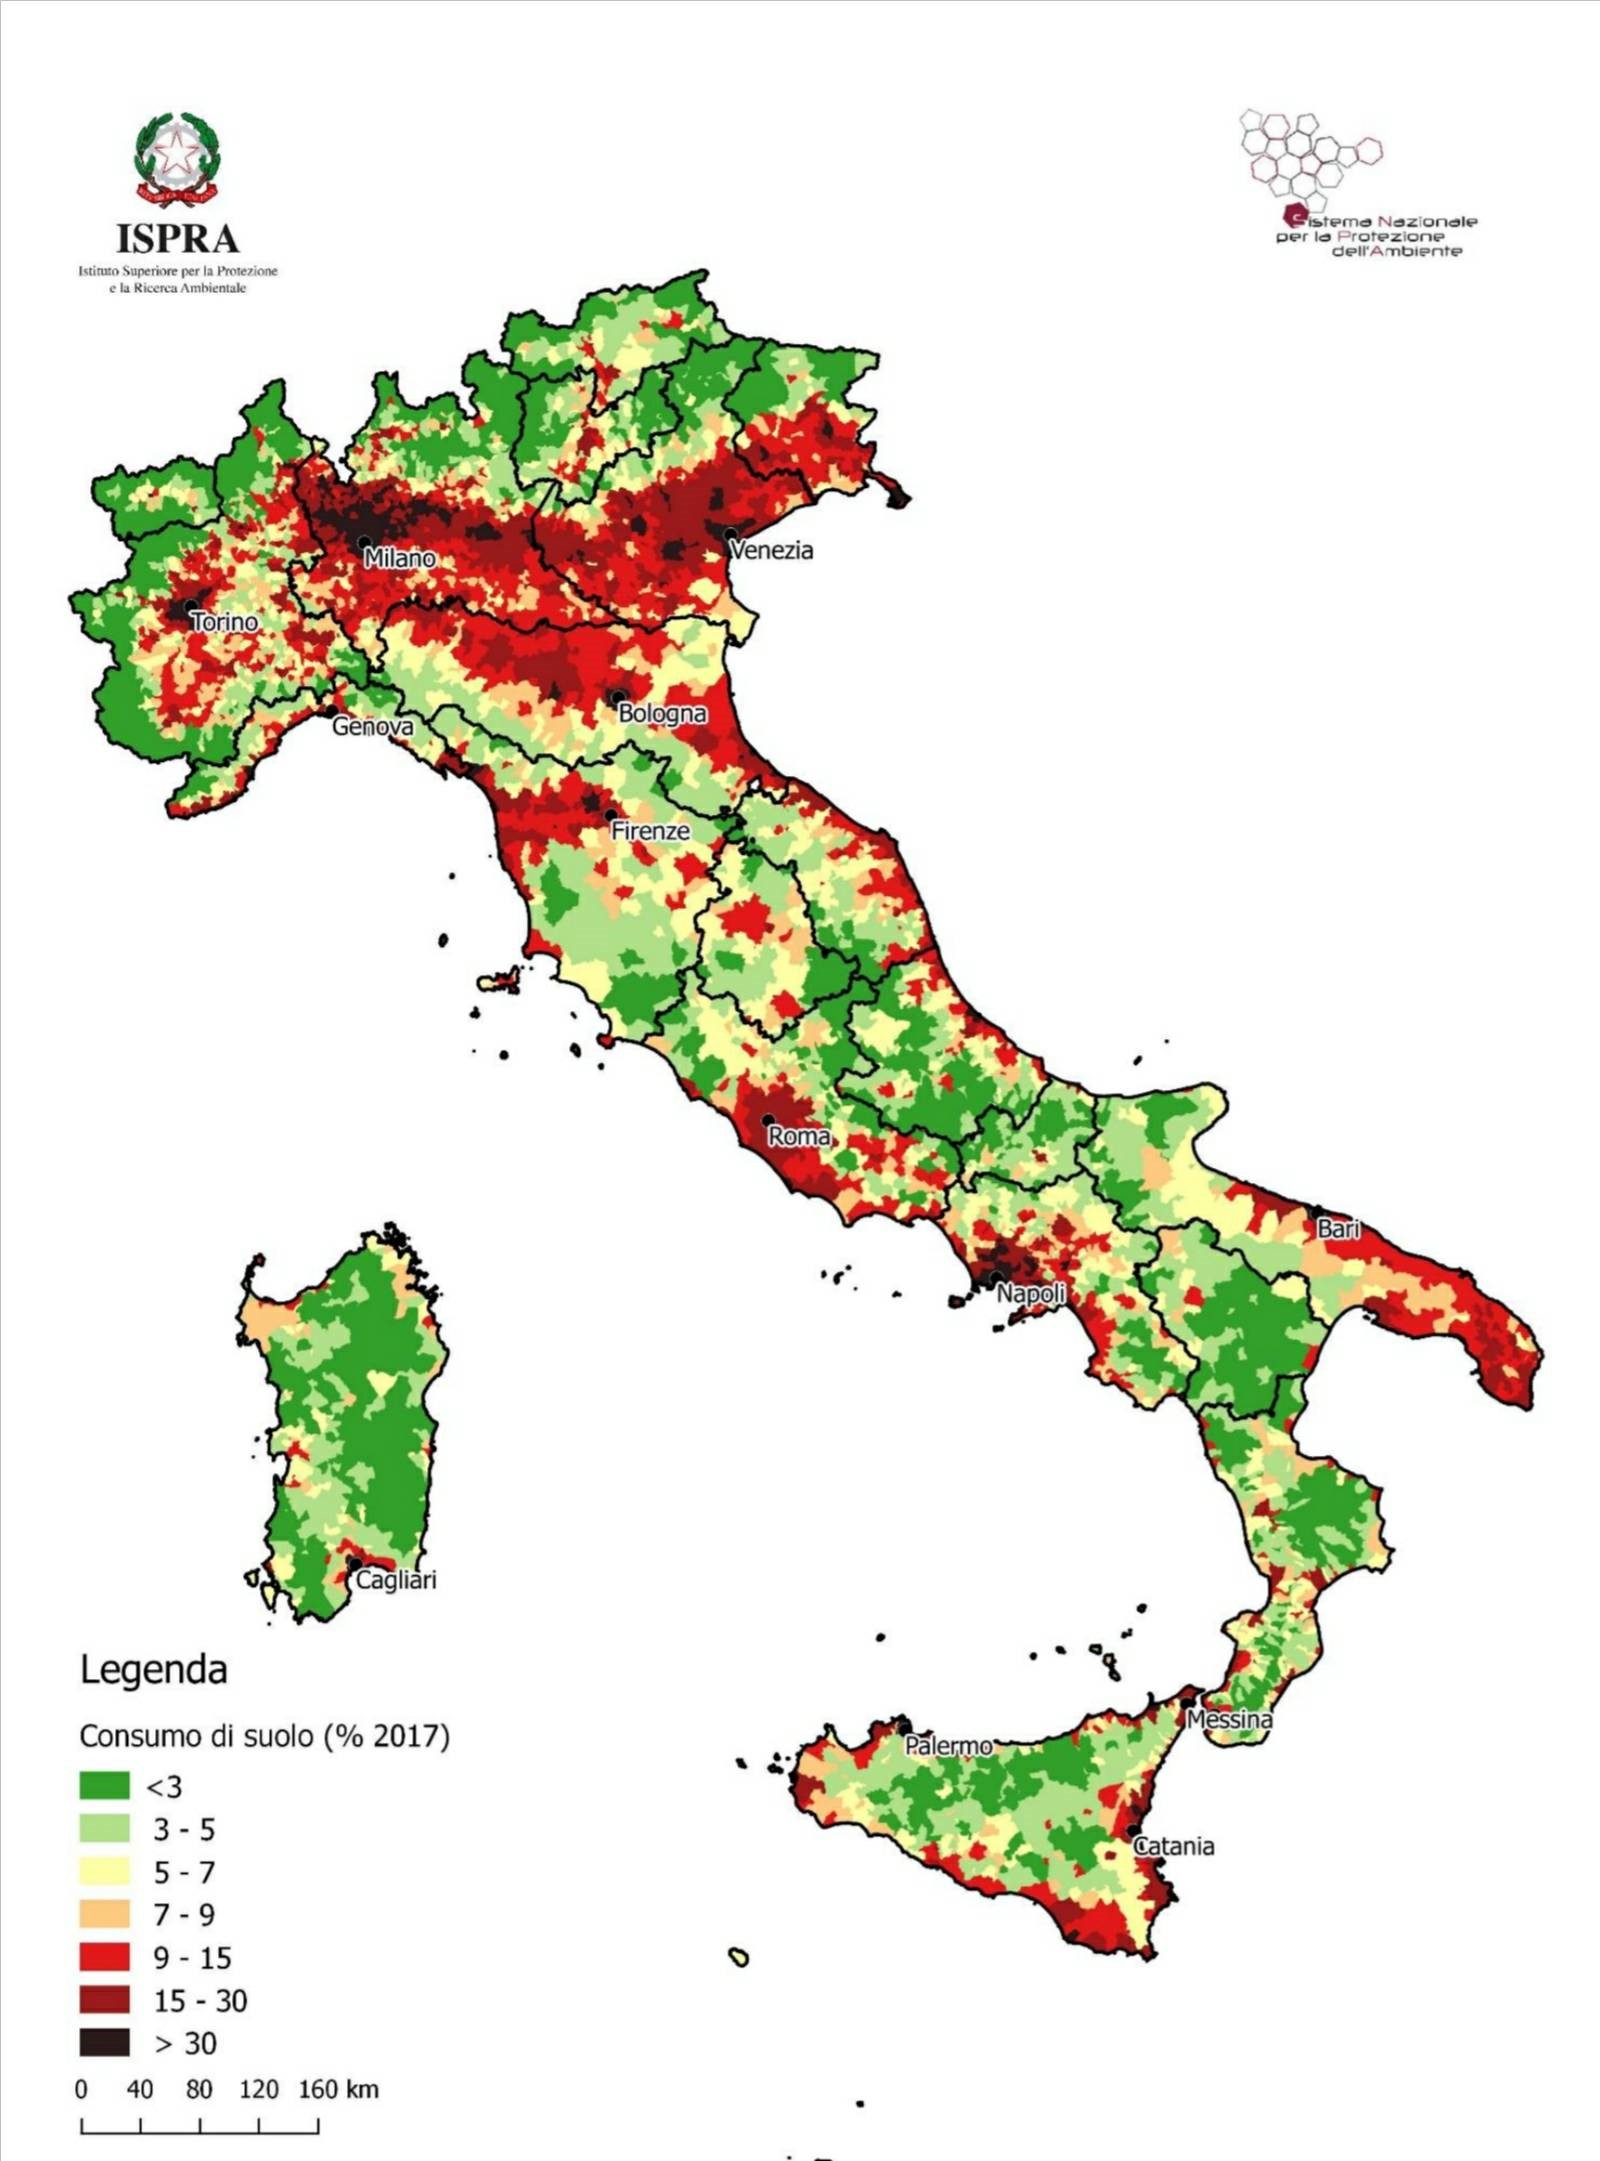 Consumo di suolo in Italia, ISPRA: incremento inarrestabile